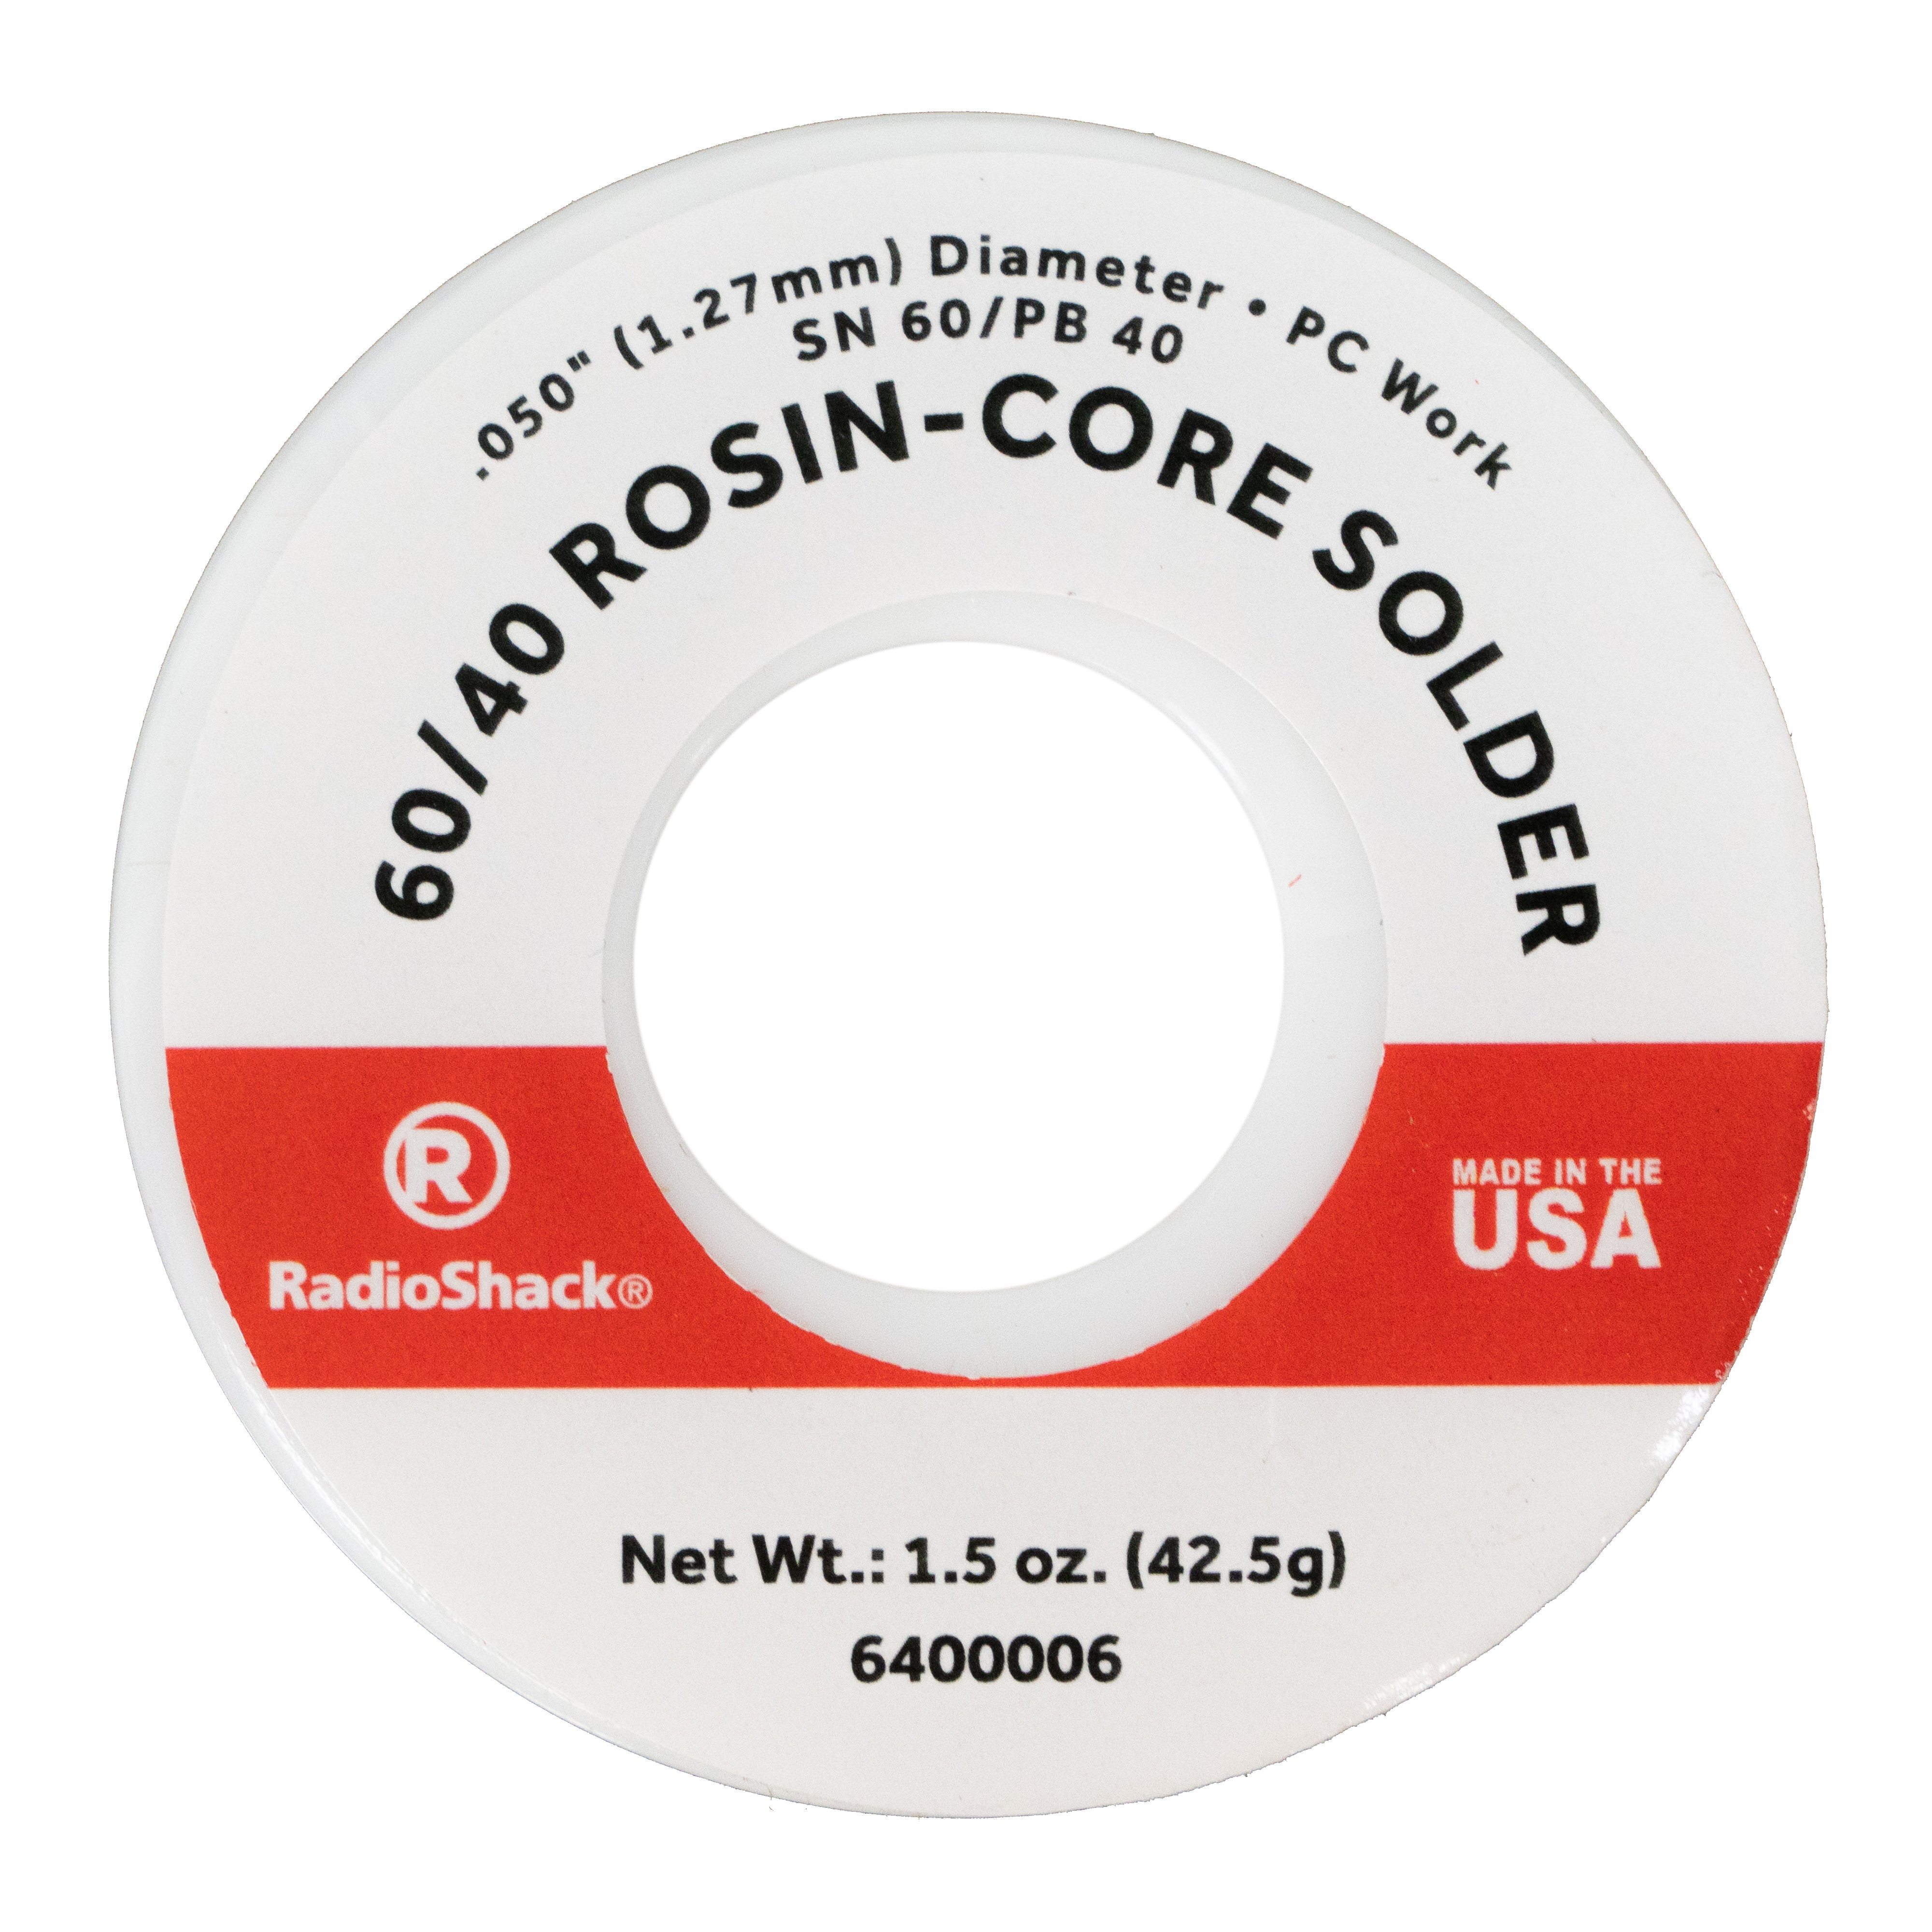 Image of SnPb 60/40 Rosin-Core Solder 0.050" Diameter (1.5oz)